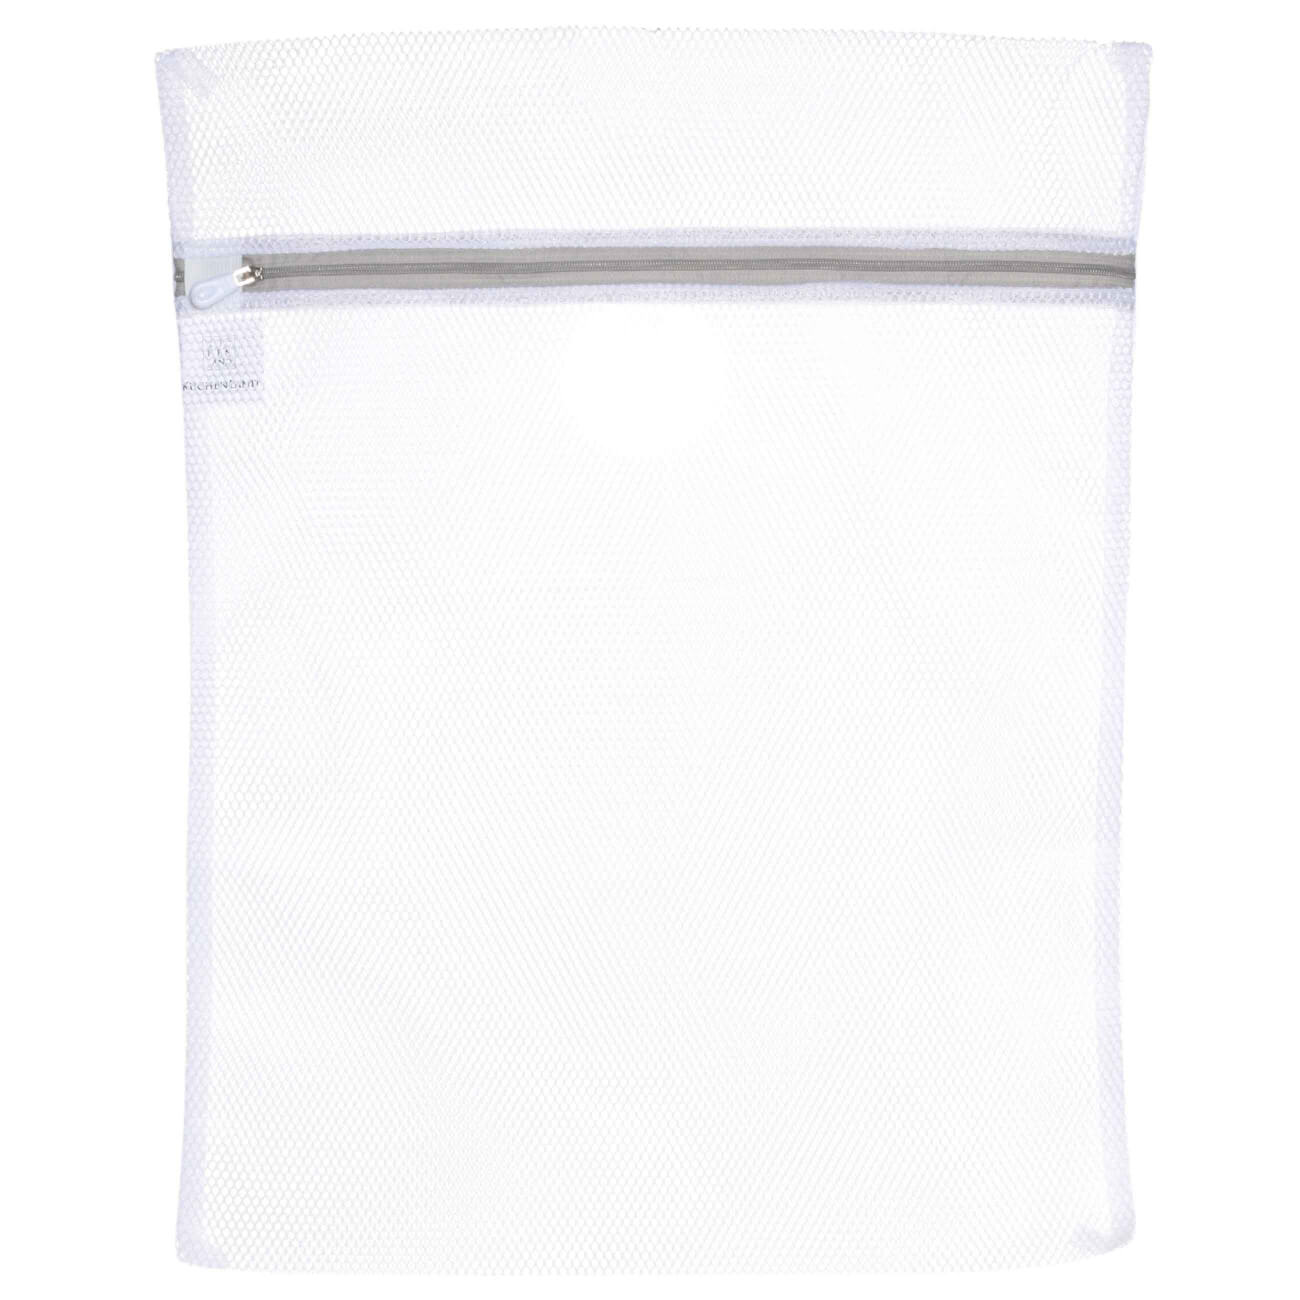 Мешок для стирки одежды, 40х50 см, полиэстер, бело-серый, Safety изображение № 1